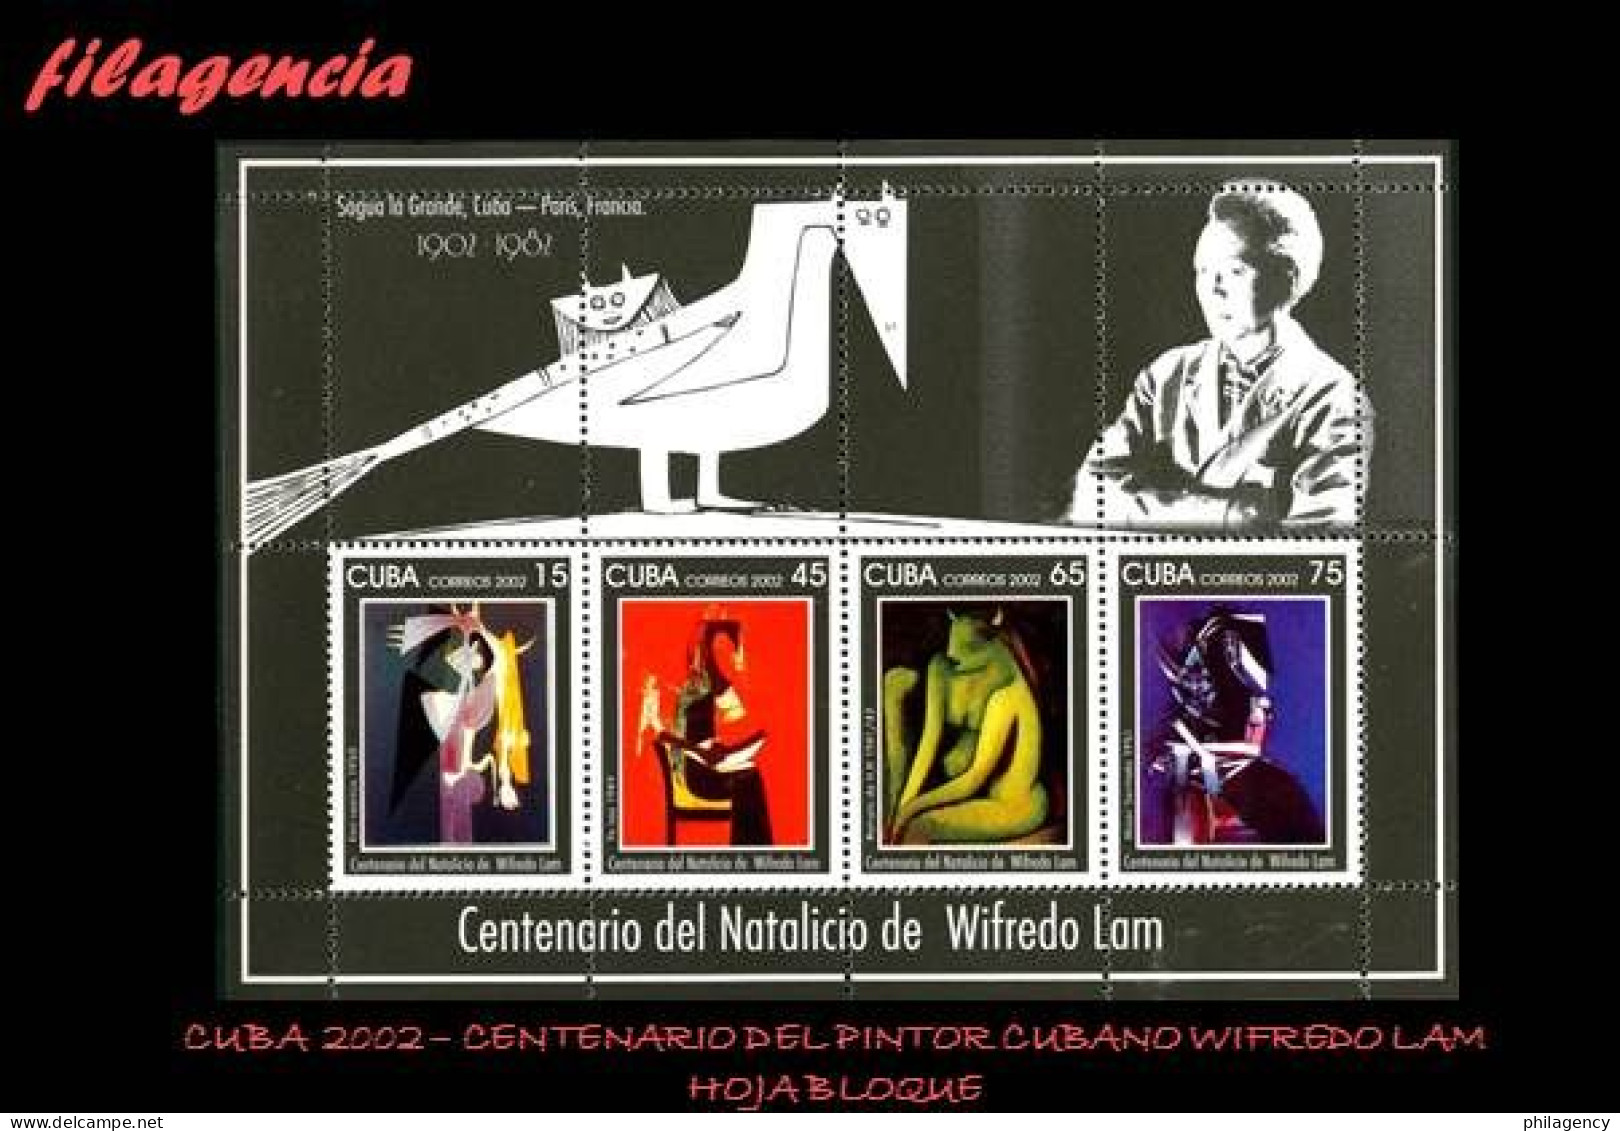 CUBA MINT. 2002-25 CENTENARIO DEL PINTOR CUBANO WIFREDO LAM. HOJA BLOQUE - Nuevos